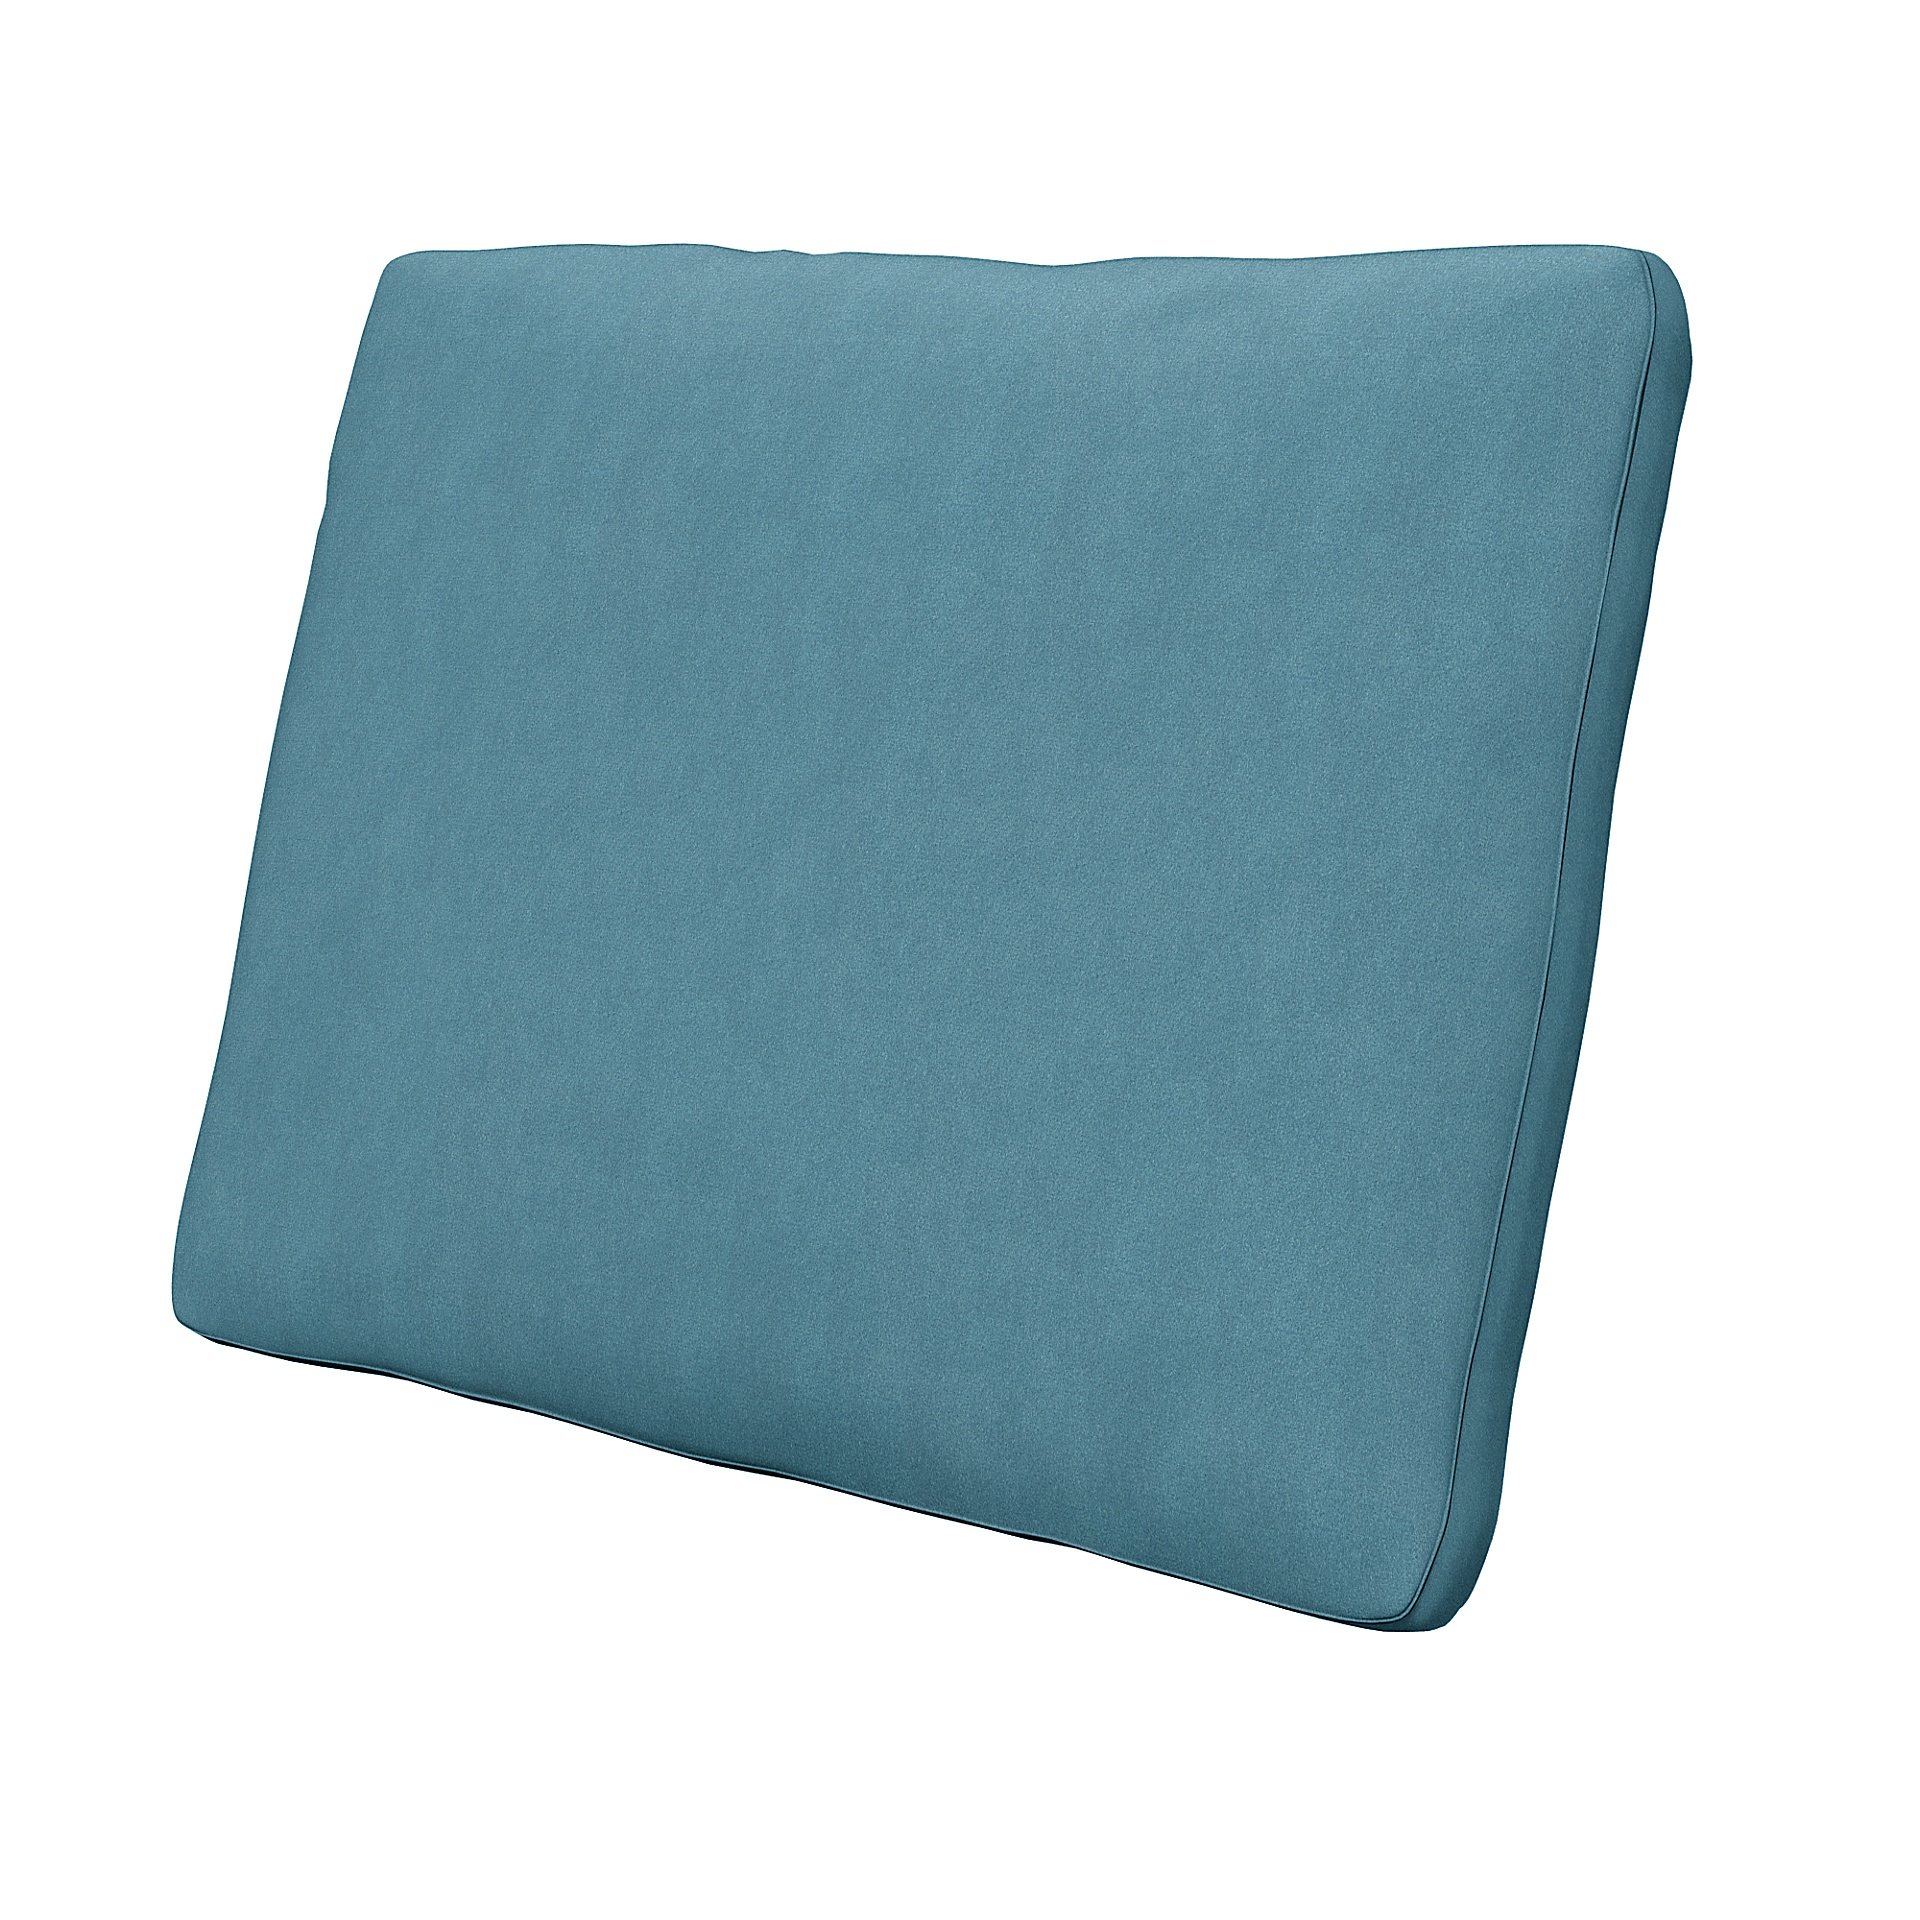 IKEA - Cushion Cover Karlstad 58x48x5 cm, Dusk Blue, Outdoor - Bemz